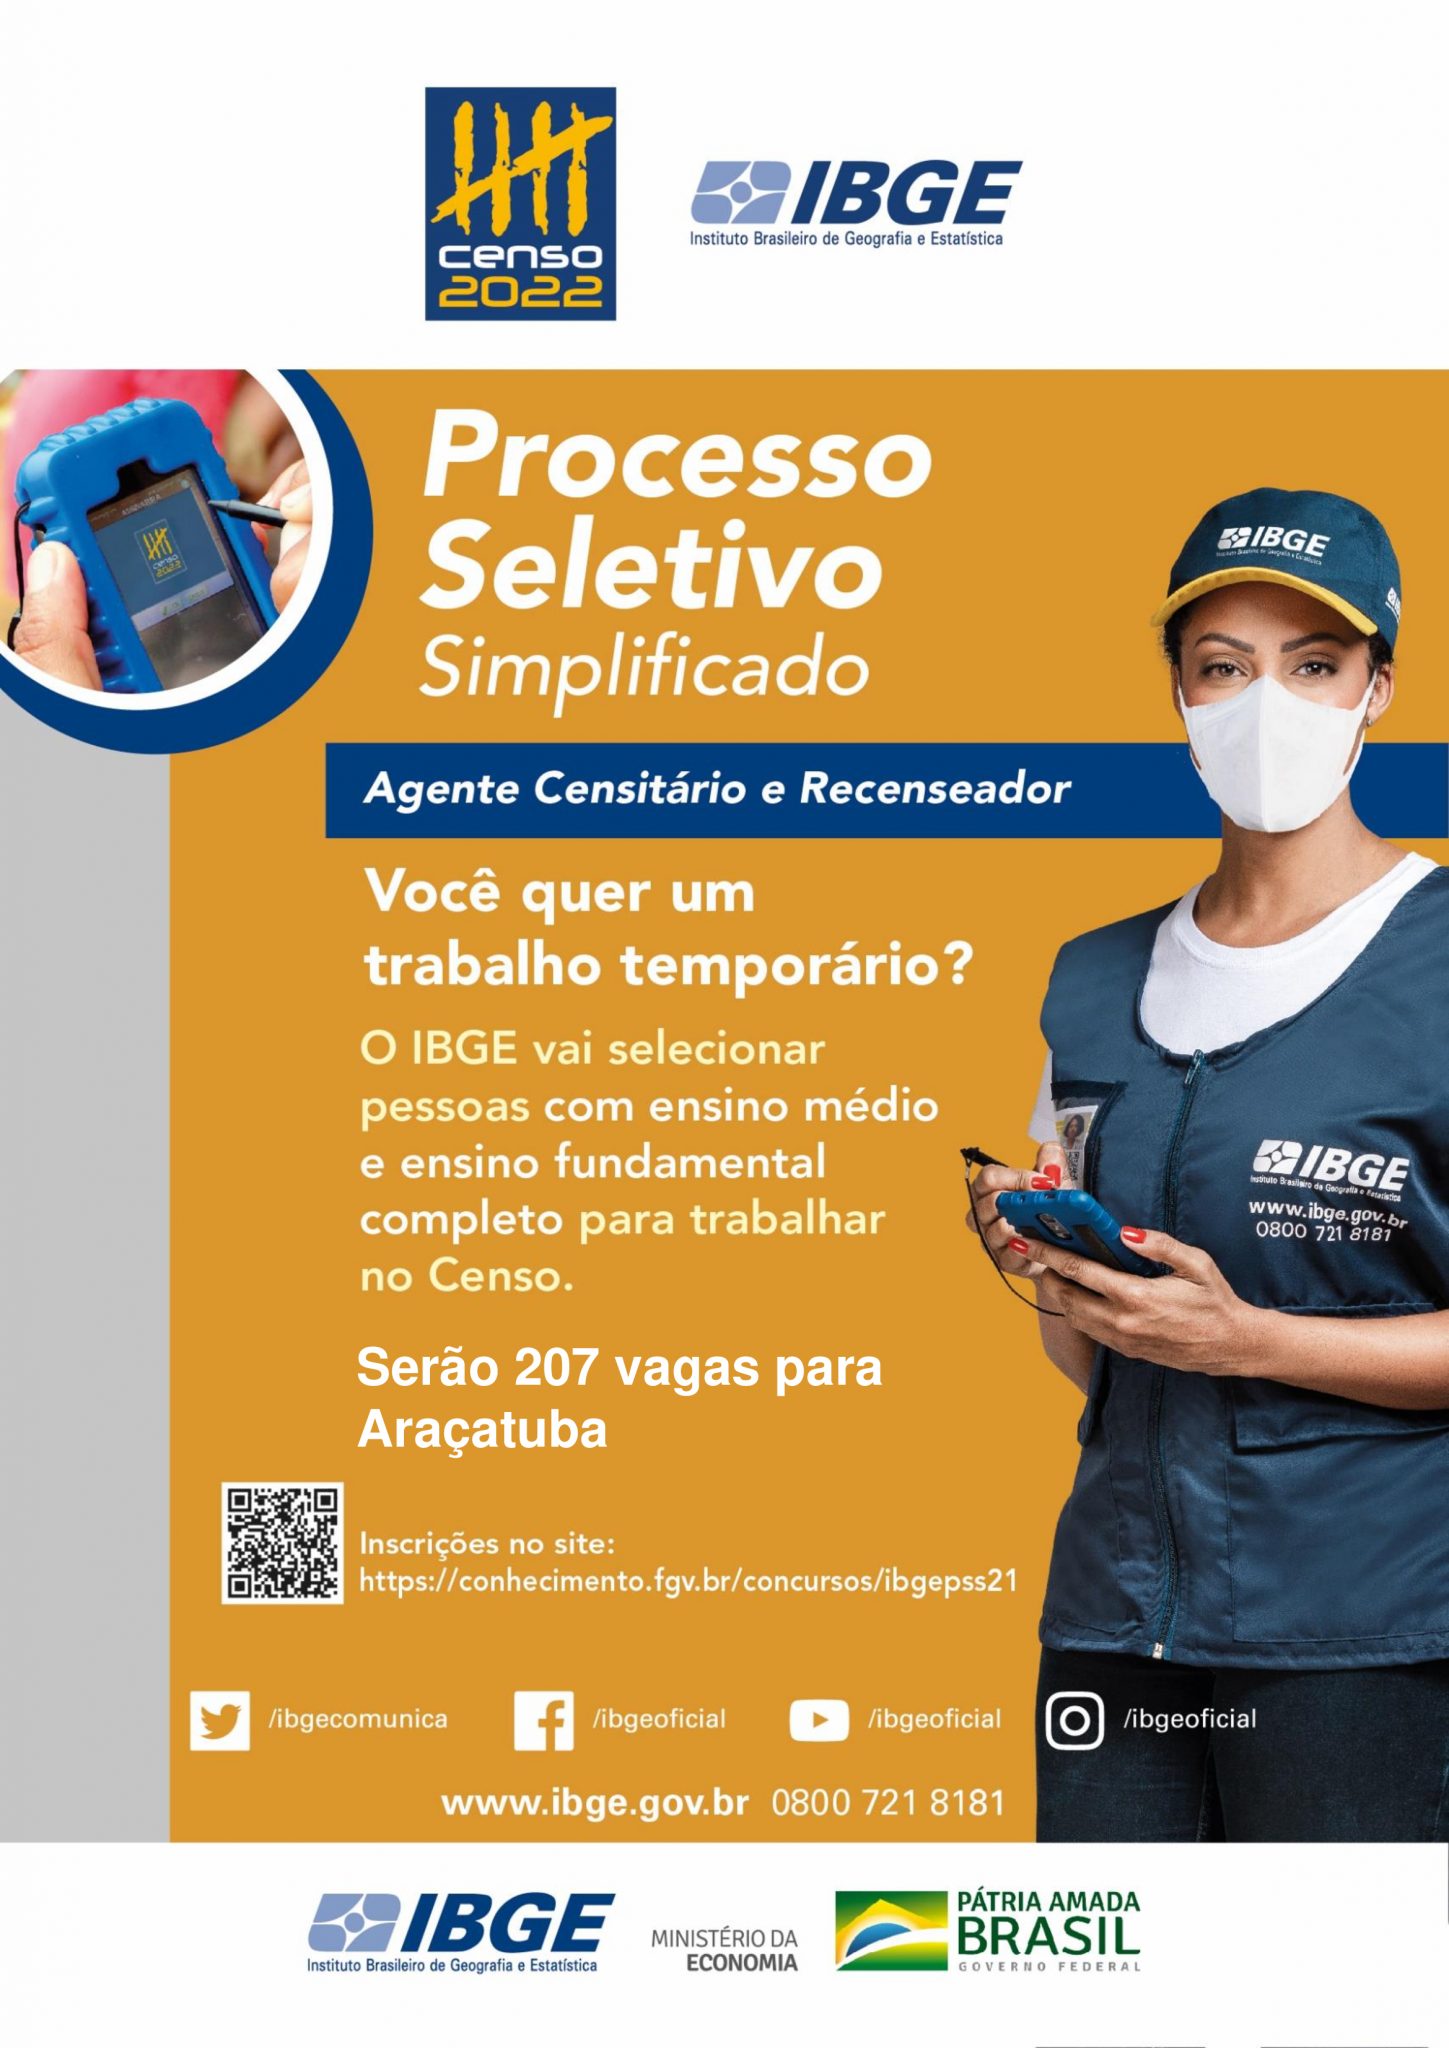 Parceria entre IBGE e Prefeitura de Araçatuba gera 207 vagas de trabalho no município